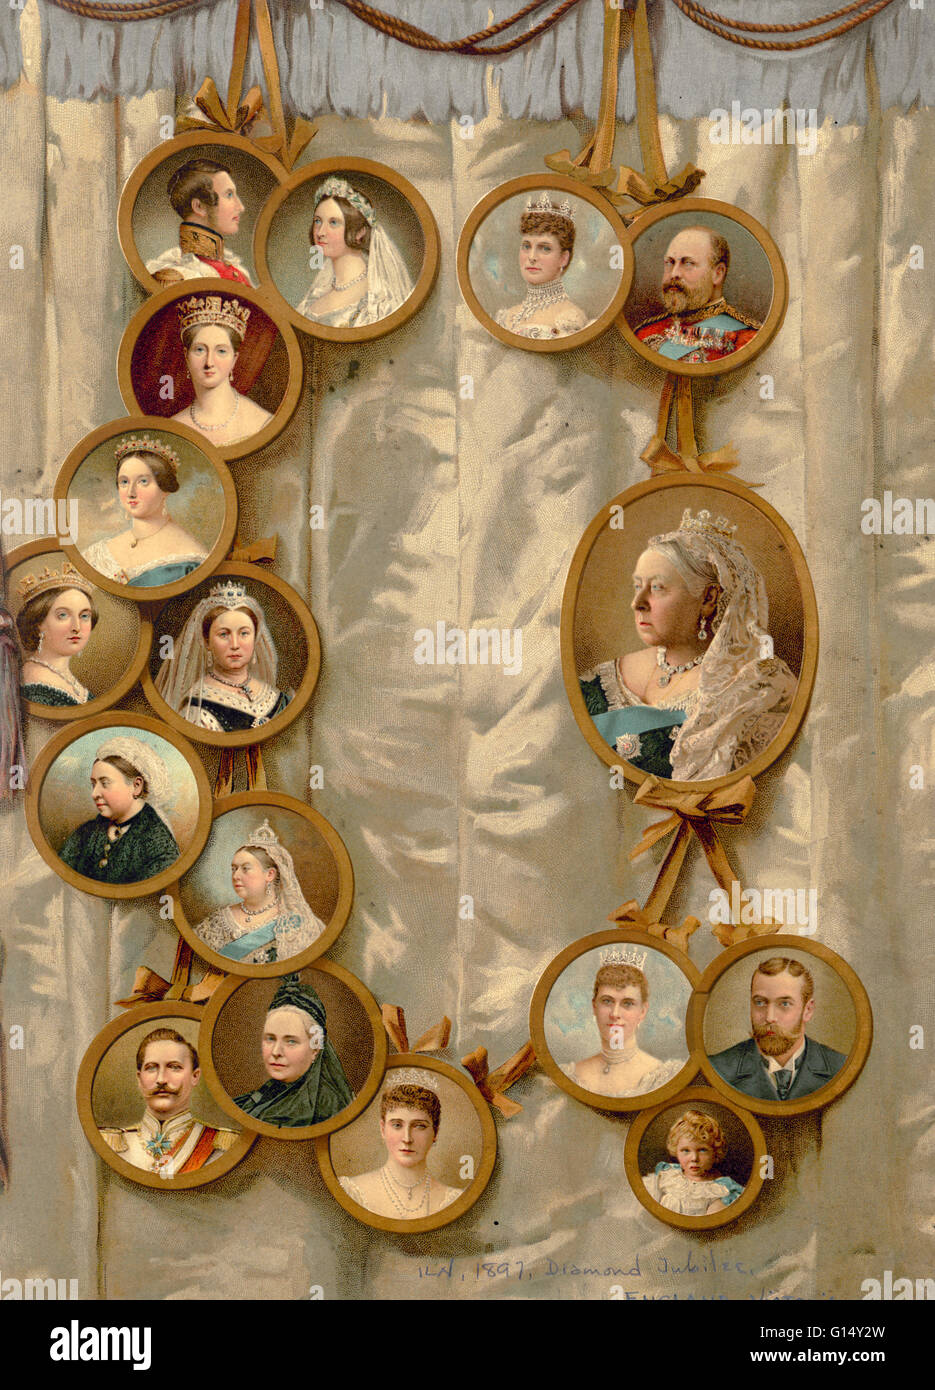 La reine Victoria et la famille royale en 1897. Un arbre généalogique de  portraits commémorant Victoria. (Victoria, 24 mai 1819 - 22 janvier 1901)  fut reine du Royaume-Uni de Grande-Bretagne et d'Irlande.